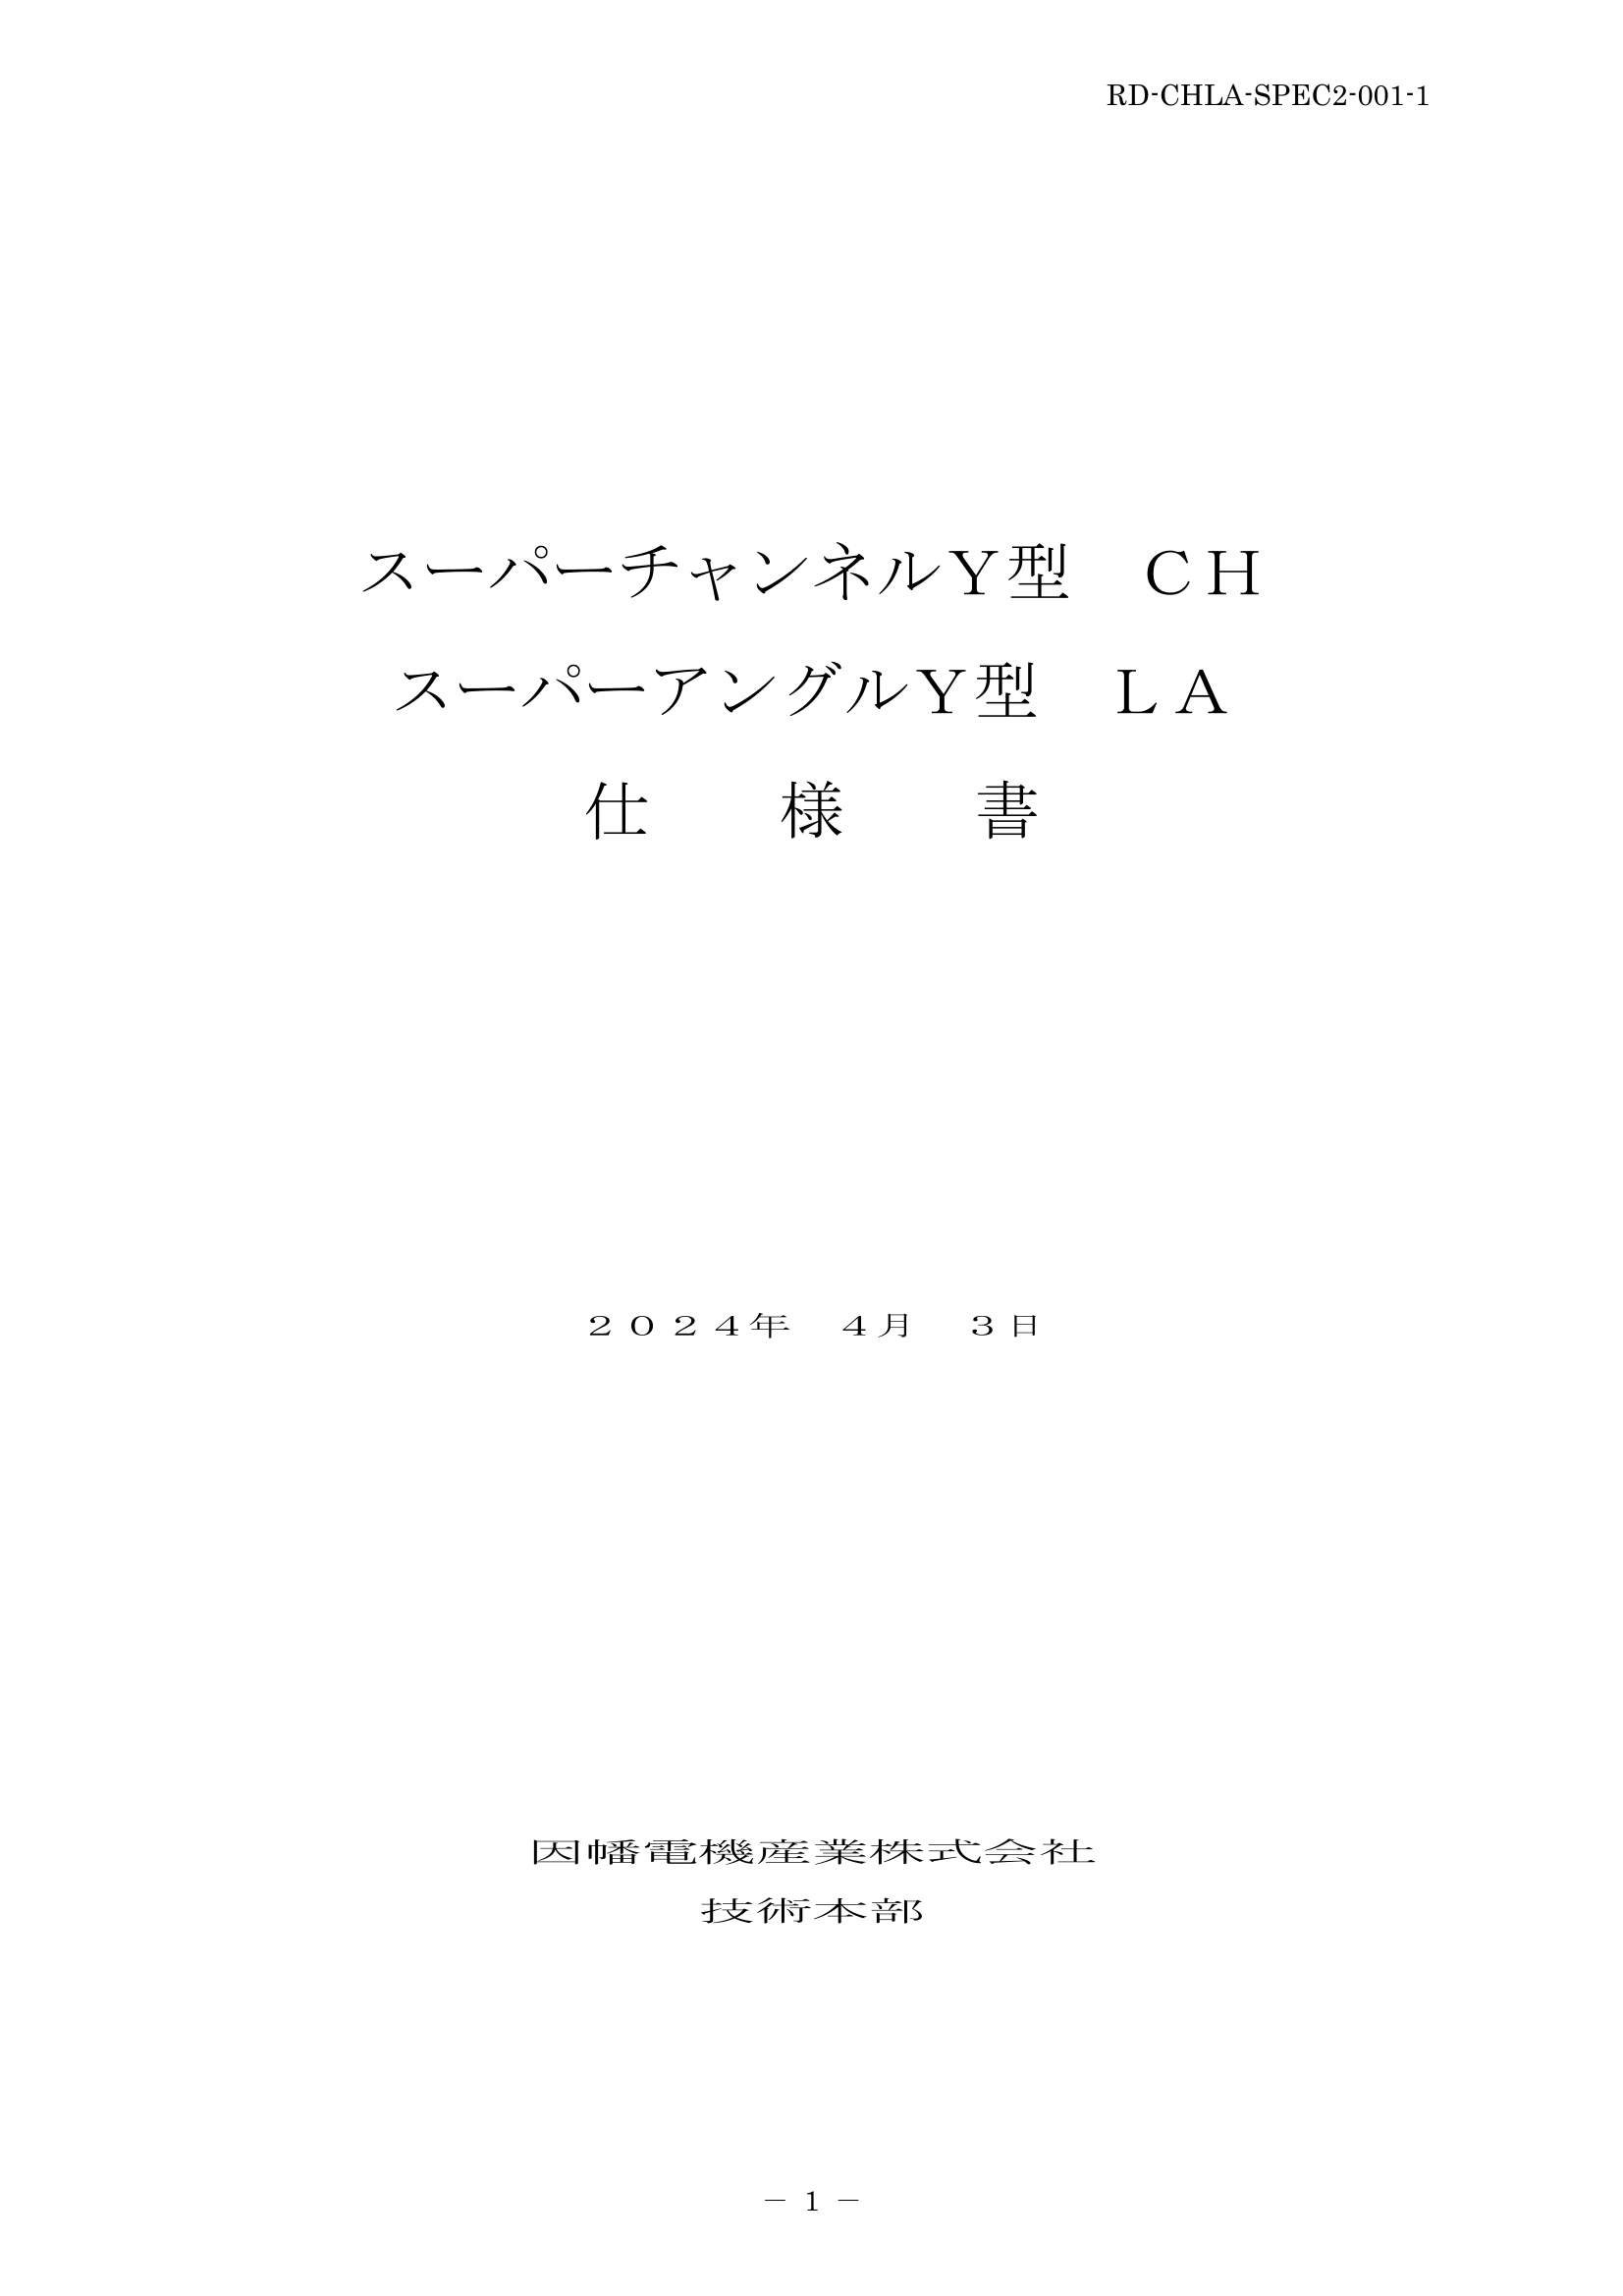 CH_LA_仕様書_20240403.pdf